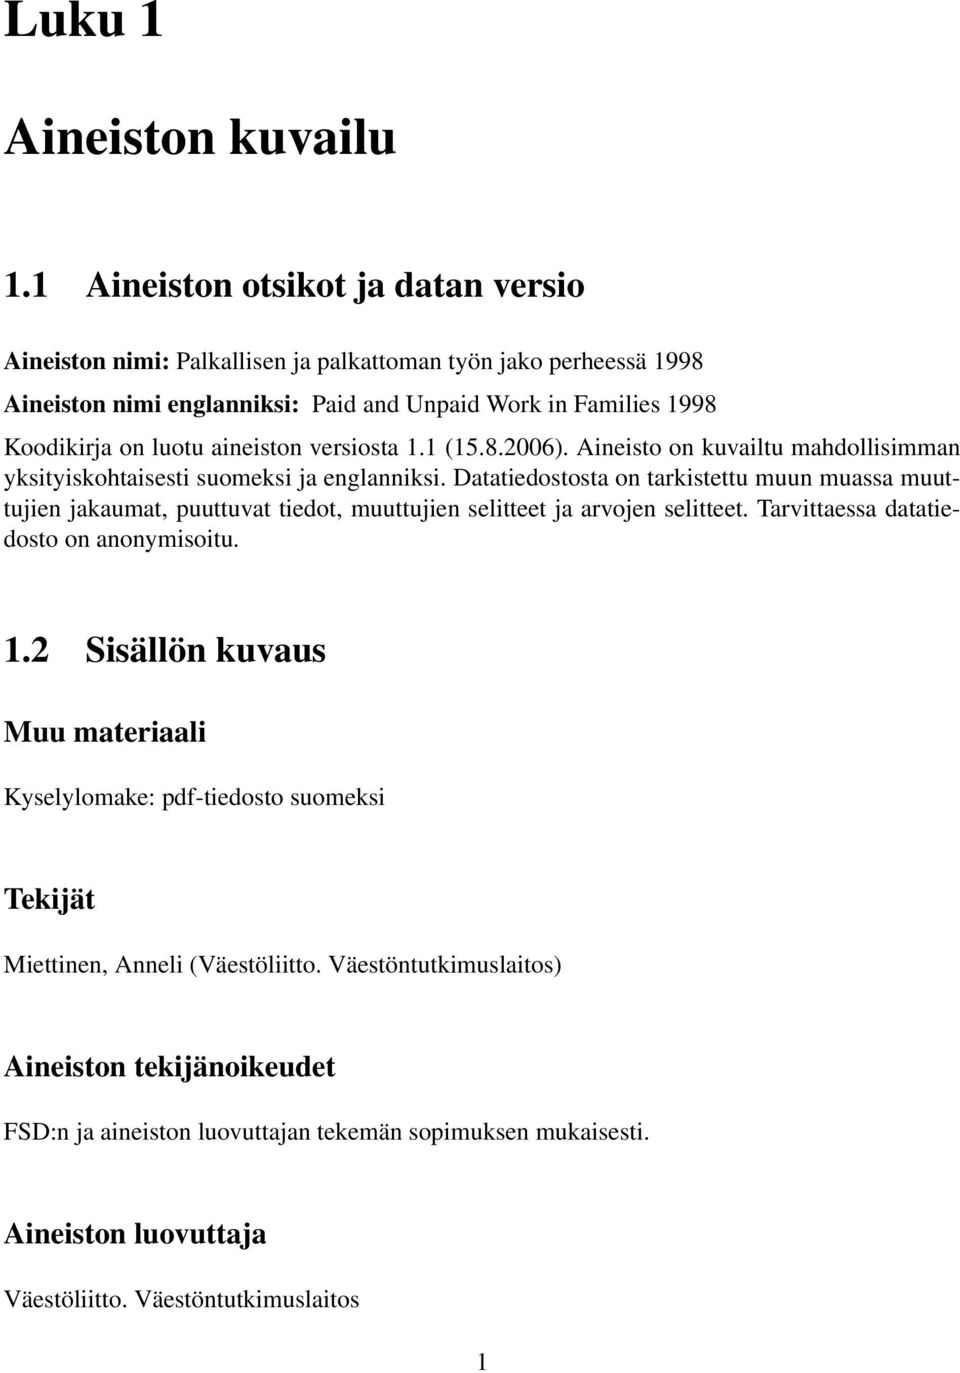 aineiston versiosta 1.1 (15.8.2006). Aineisto on kuvailtu mahdollisimman yksityiskohtaisesti suomeksi ja englanniksi.